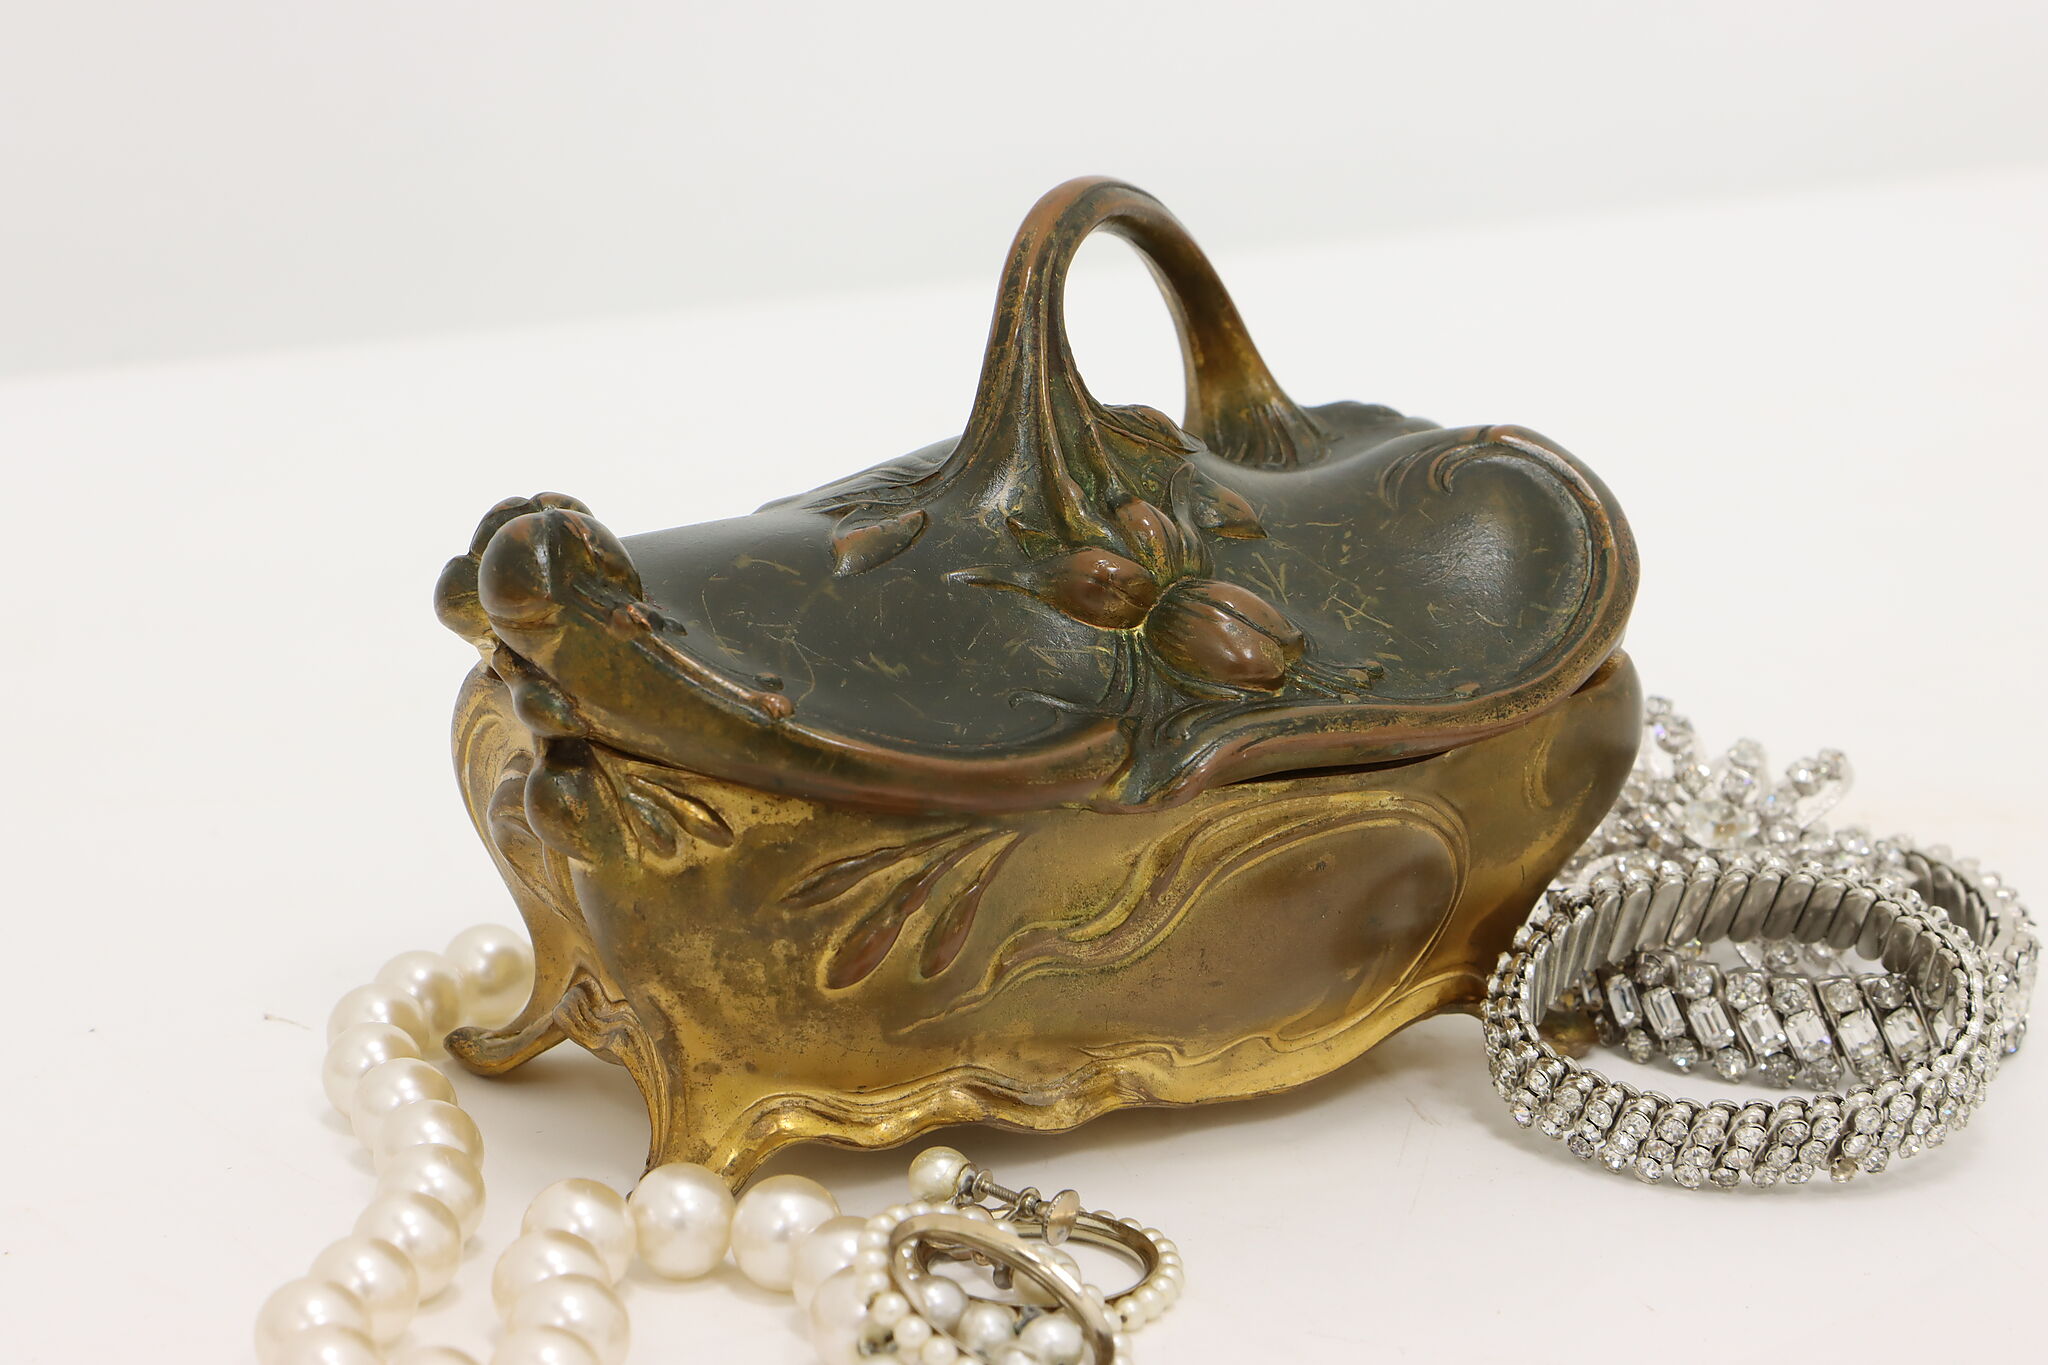 Vintage Jewelry Box Antique Victorian Art Nouveau Metal Floral Casket  Trinket